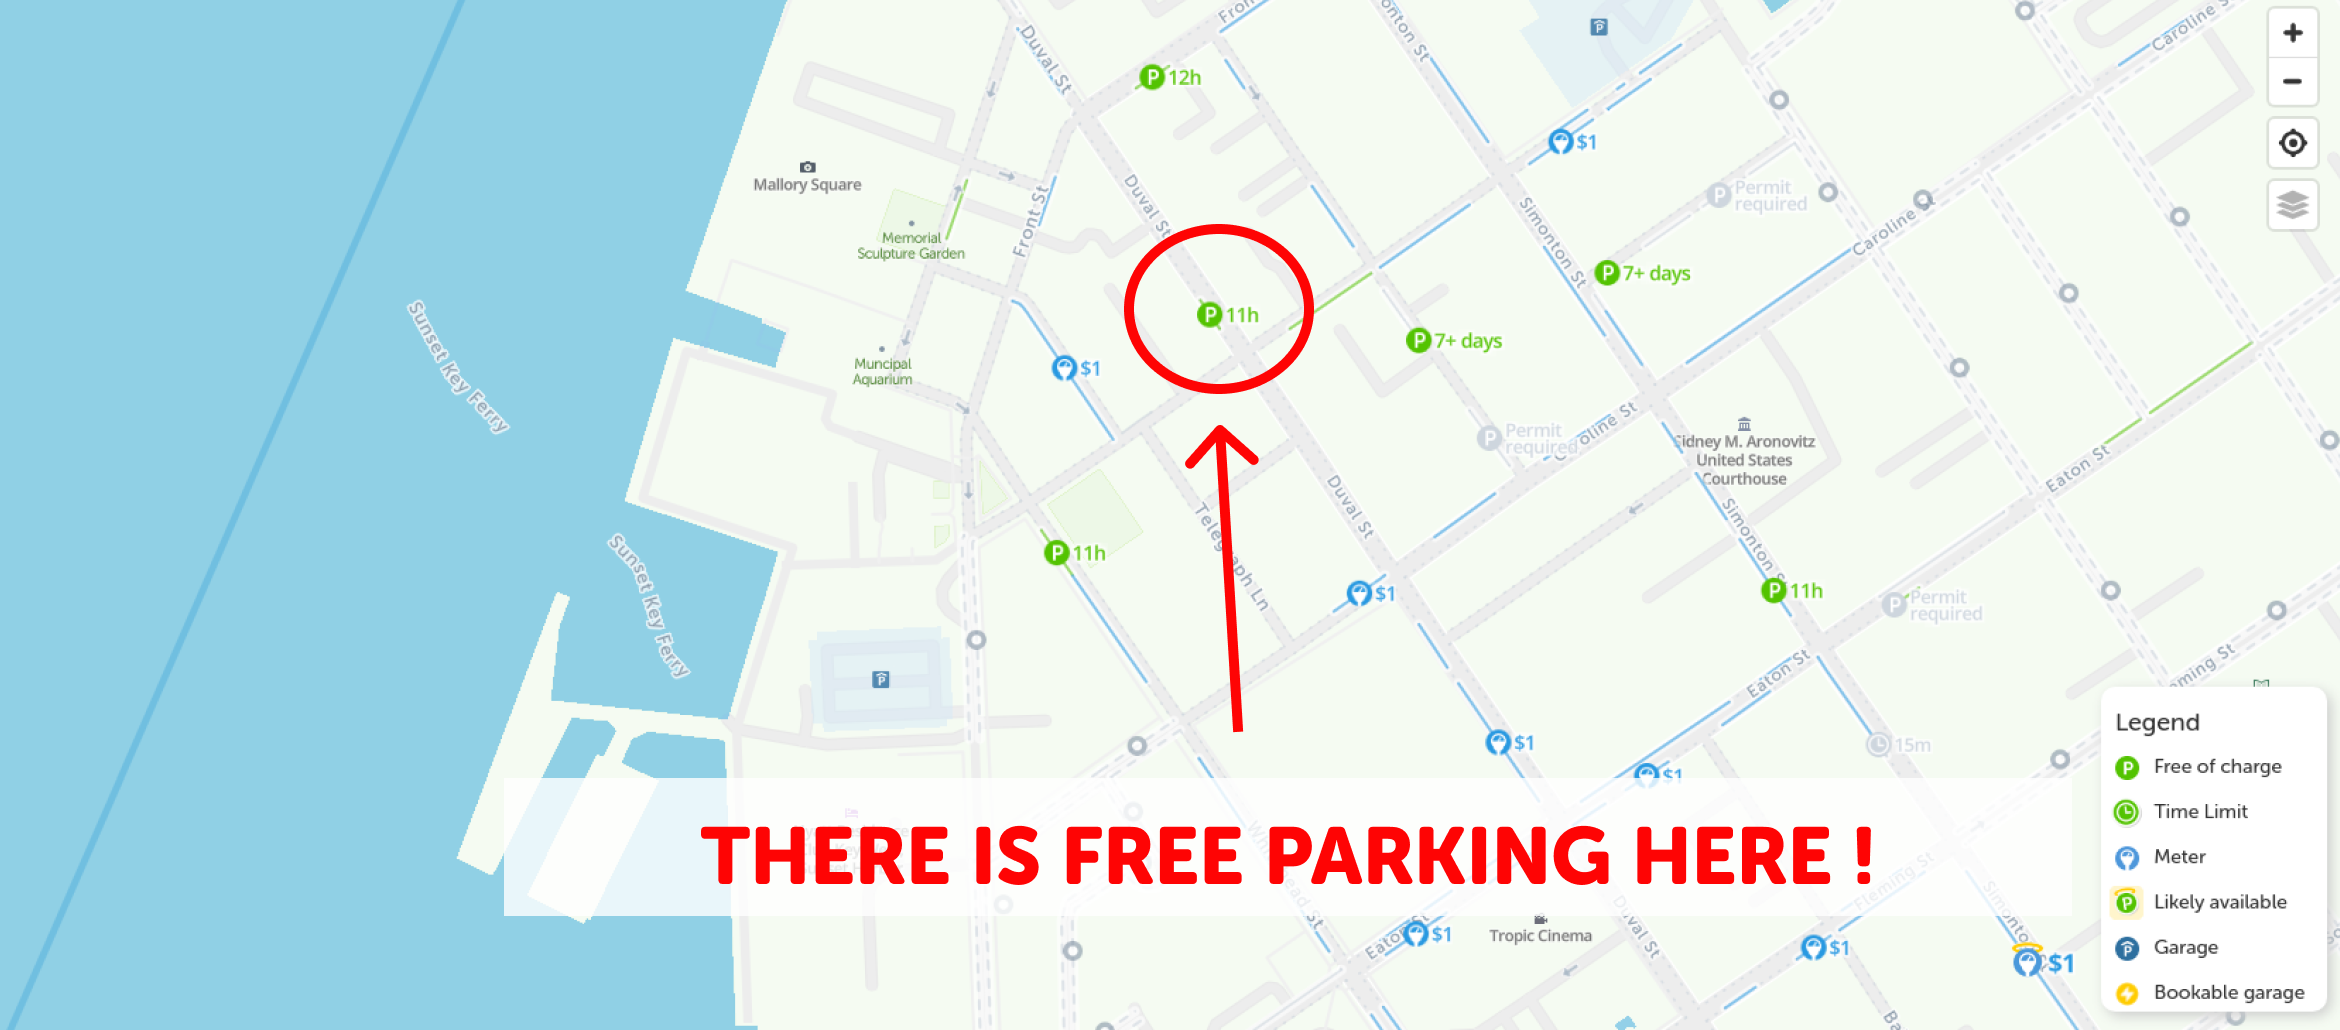 map of free parking in Key west - SpotAngels